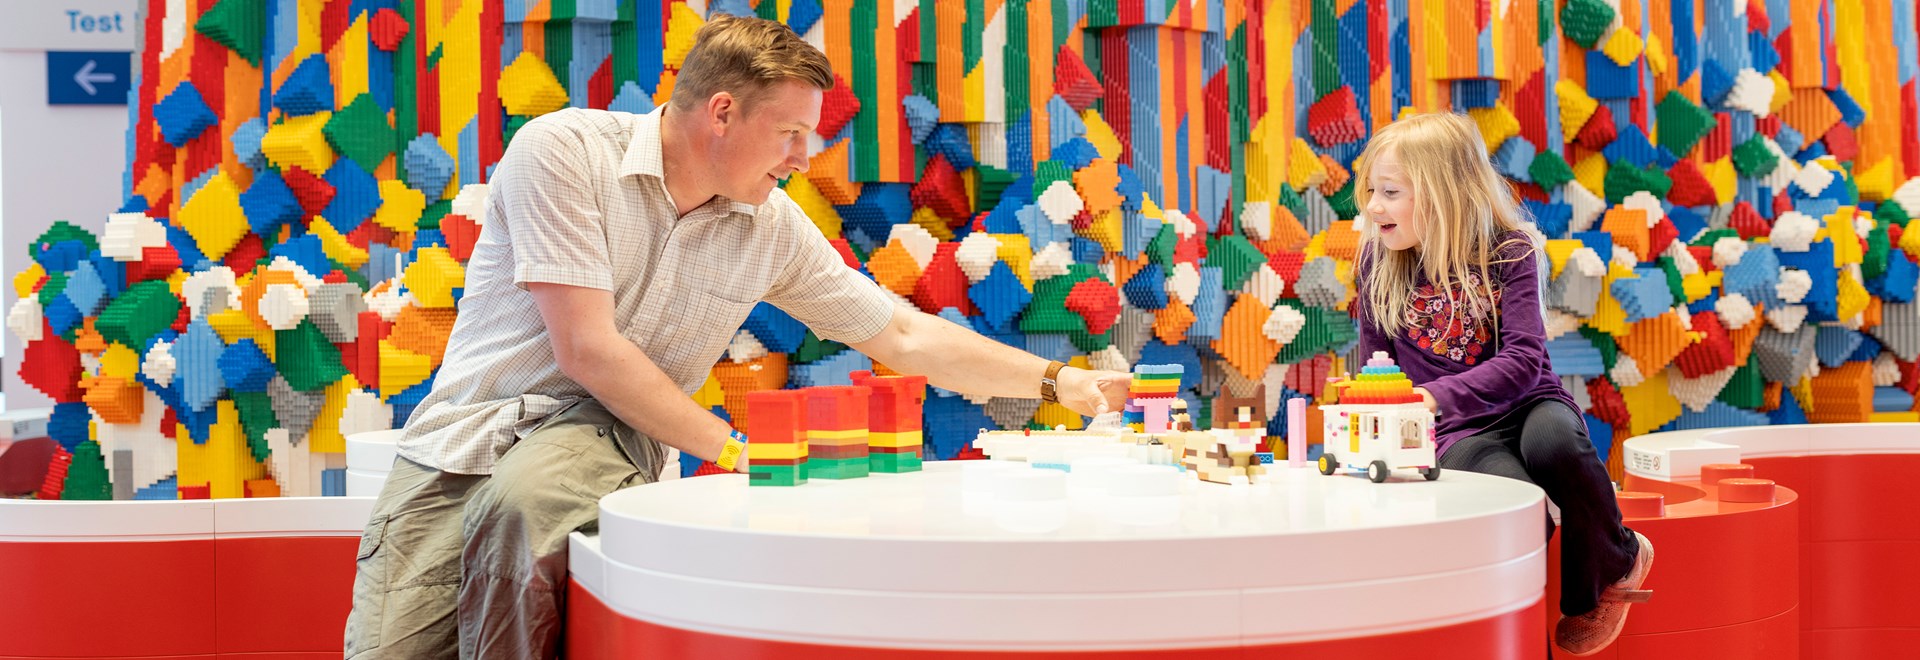 Planlæg dit besøg i LEGO House - se åbningskalender her